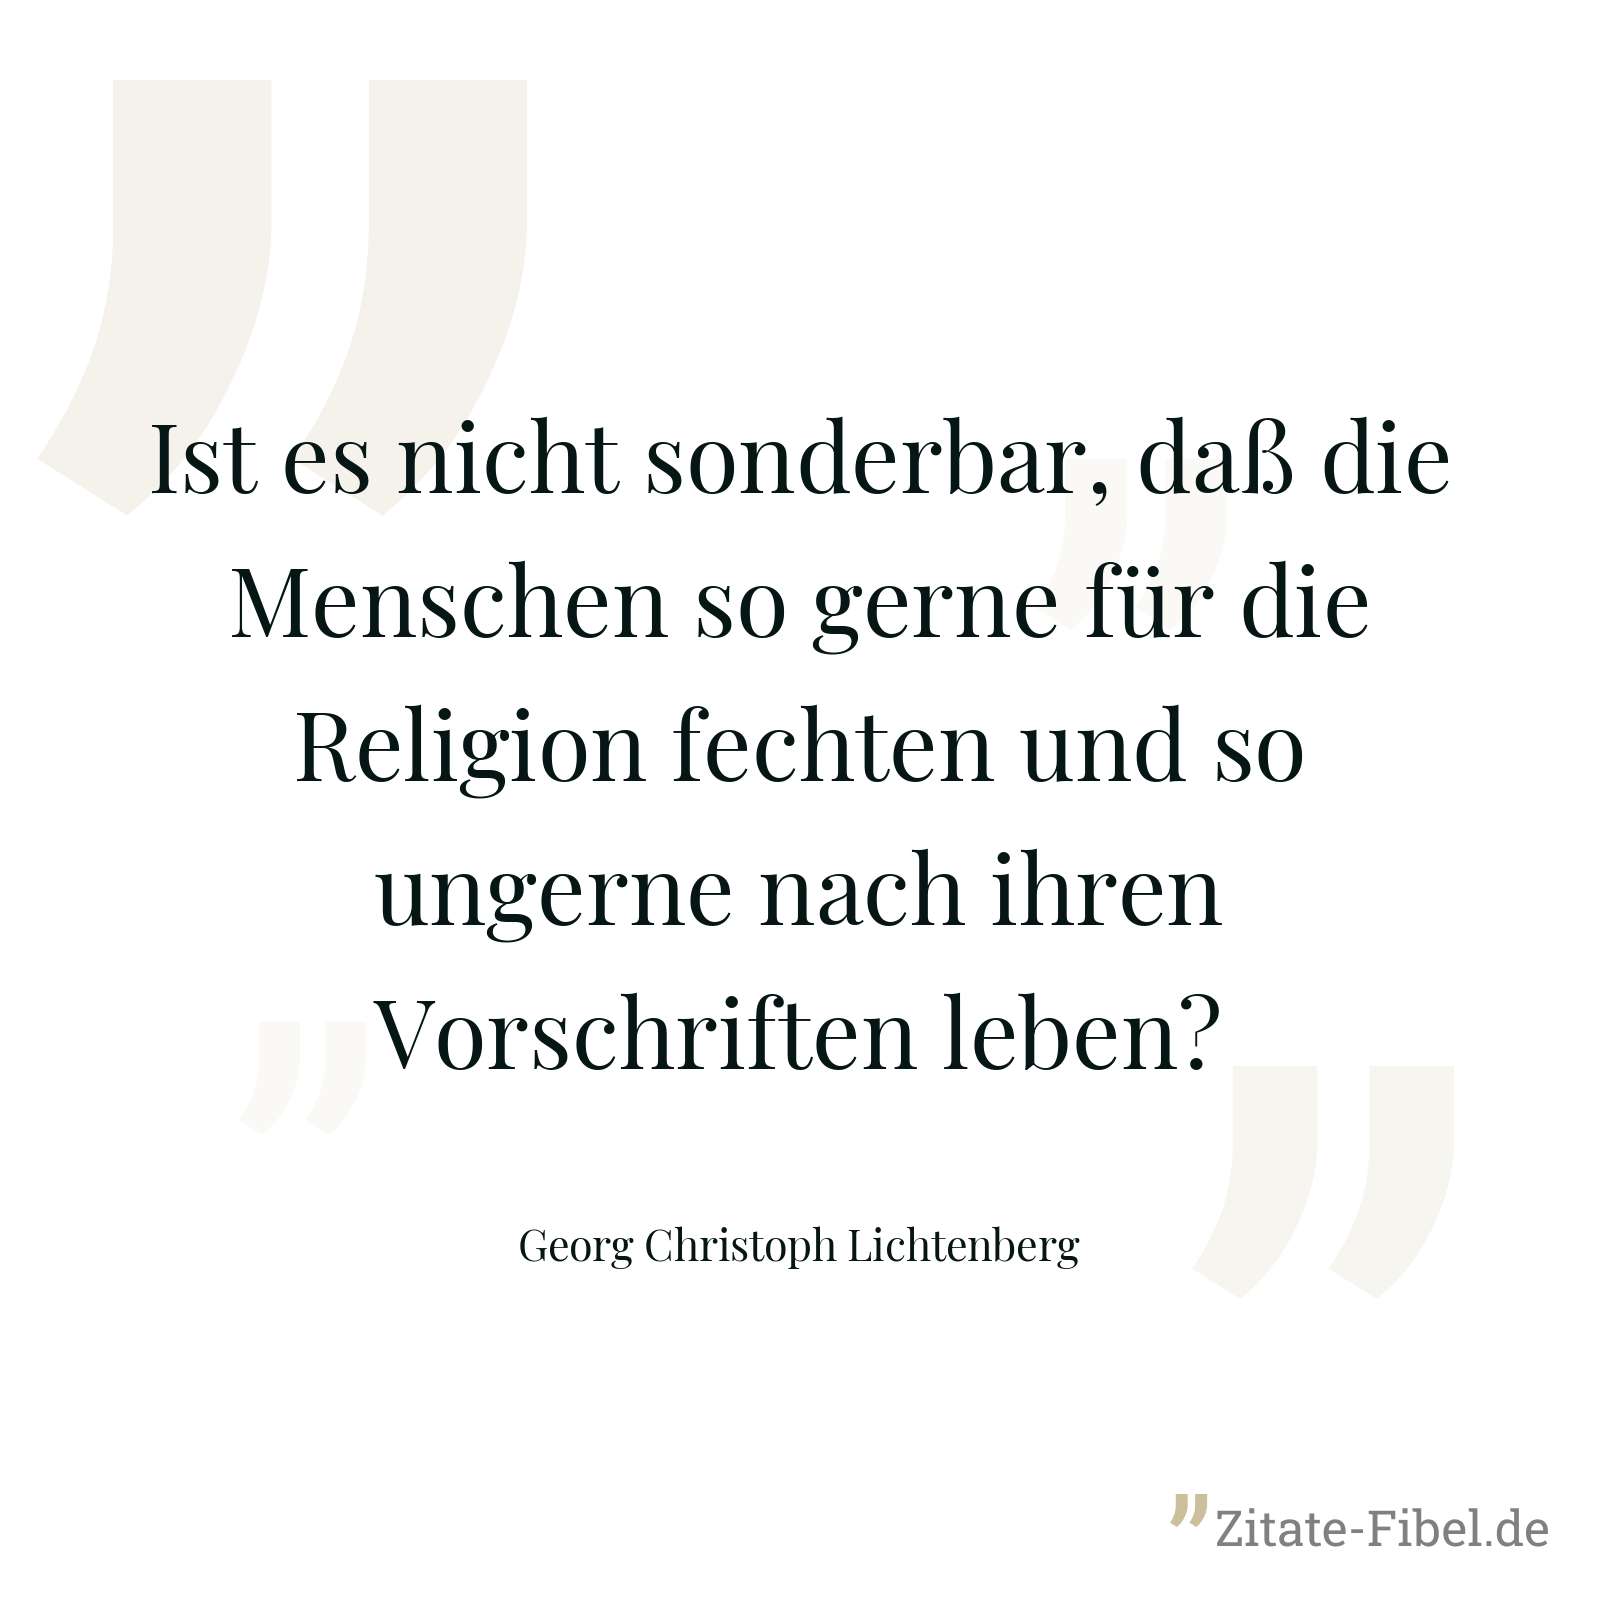 Ist es nicht sonderbar, daß die Menschen so gerne für die Religion fechten und so ungerne nach ihren Vorschriften leben? - Georg Christoph Lichtenberg